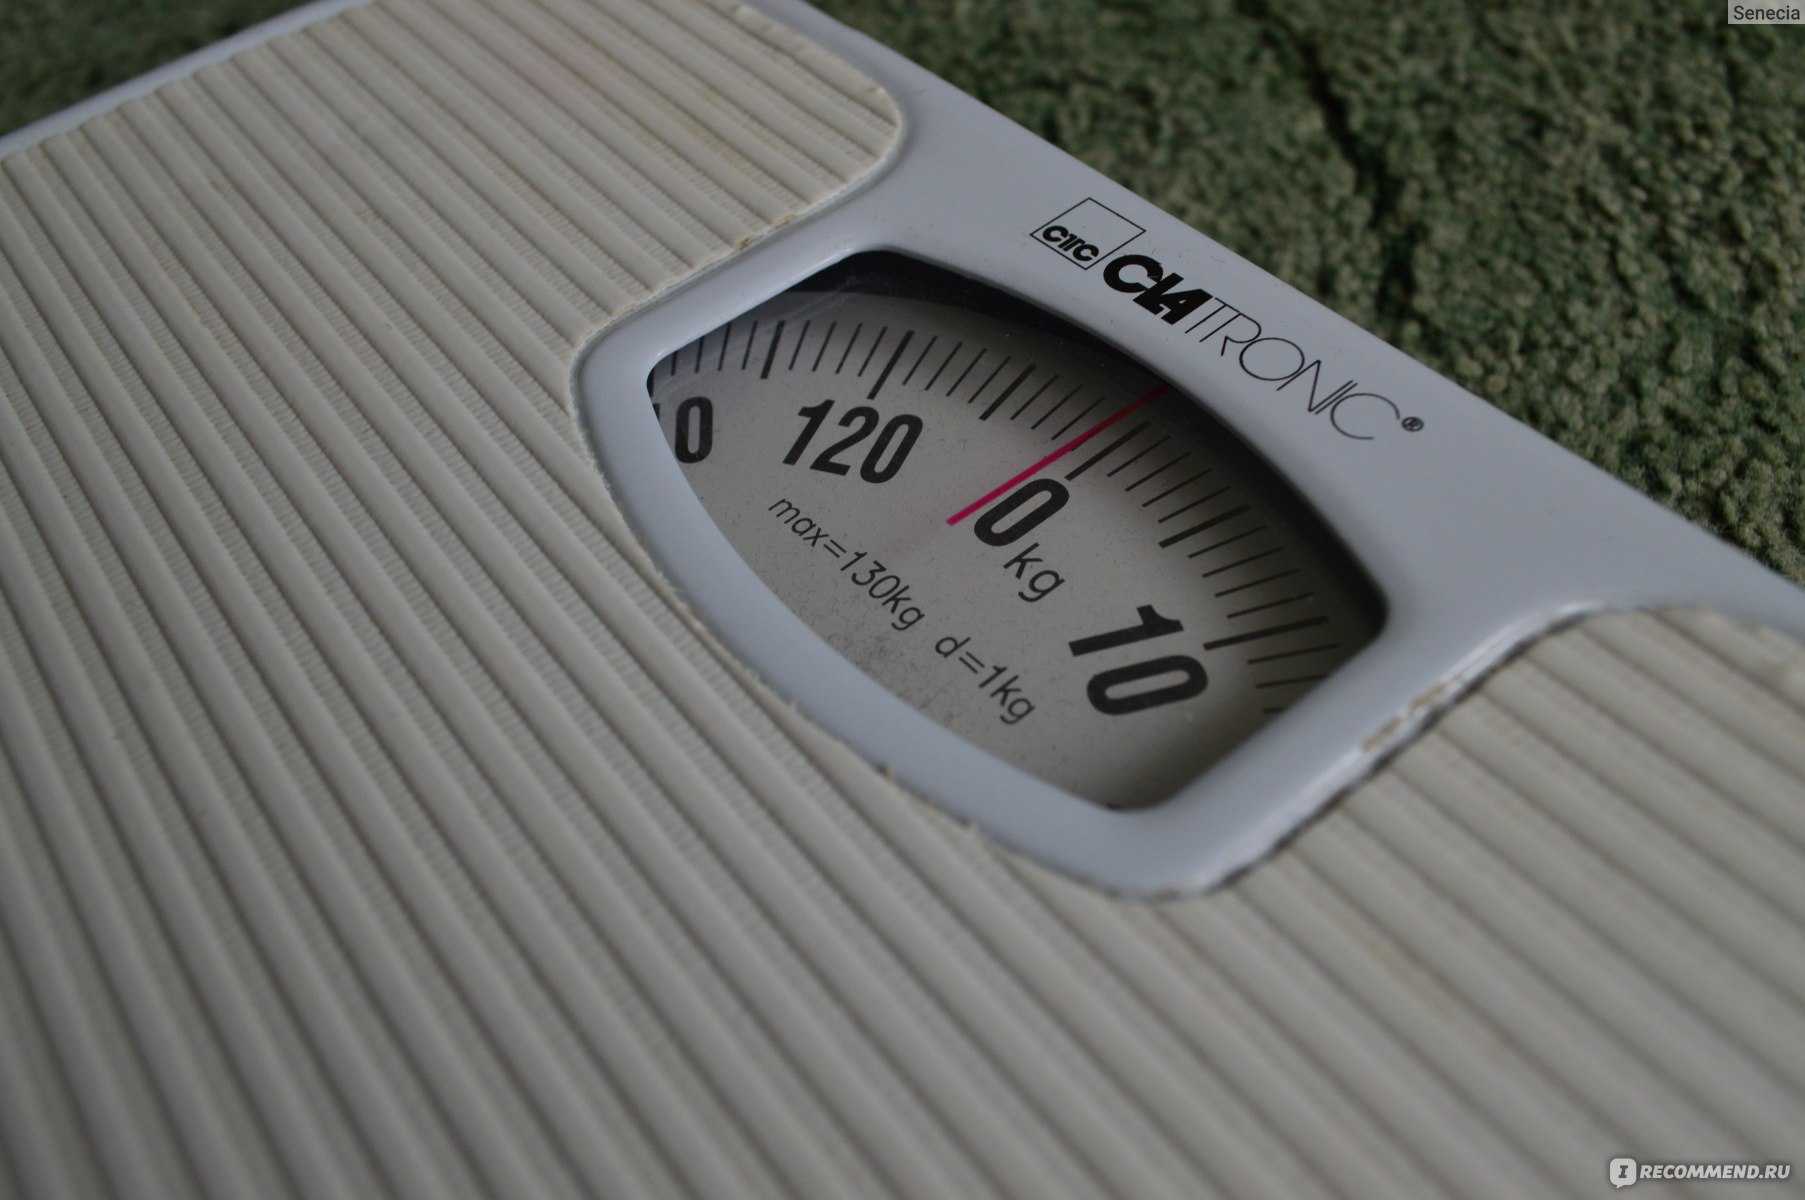 Как выбрать электронные напольные весы, как правильно настроить, взвешиваться и починить + видео